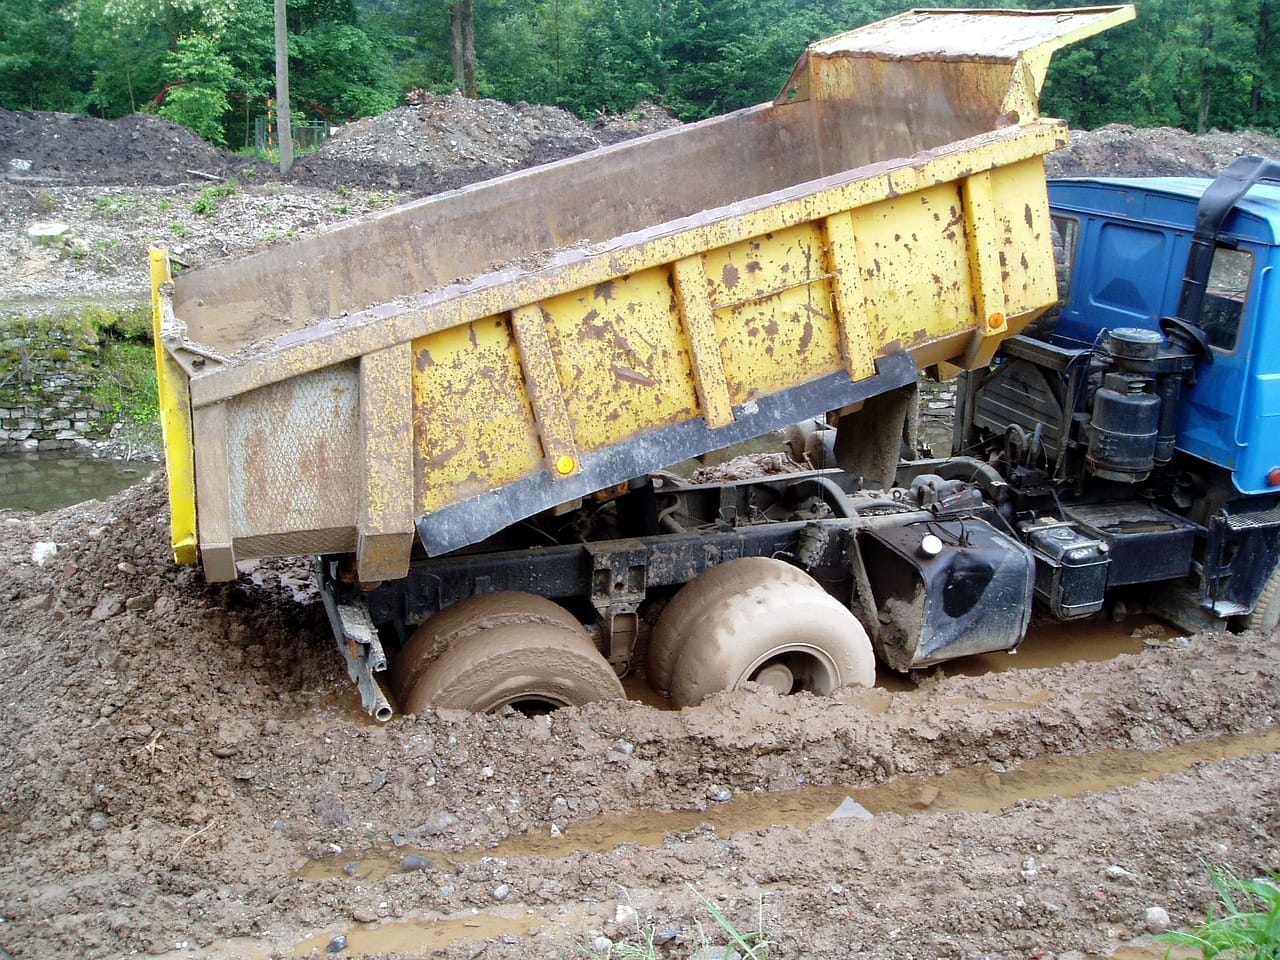 Tipper truck in mud